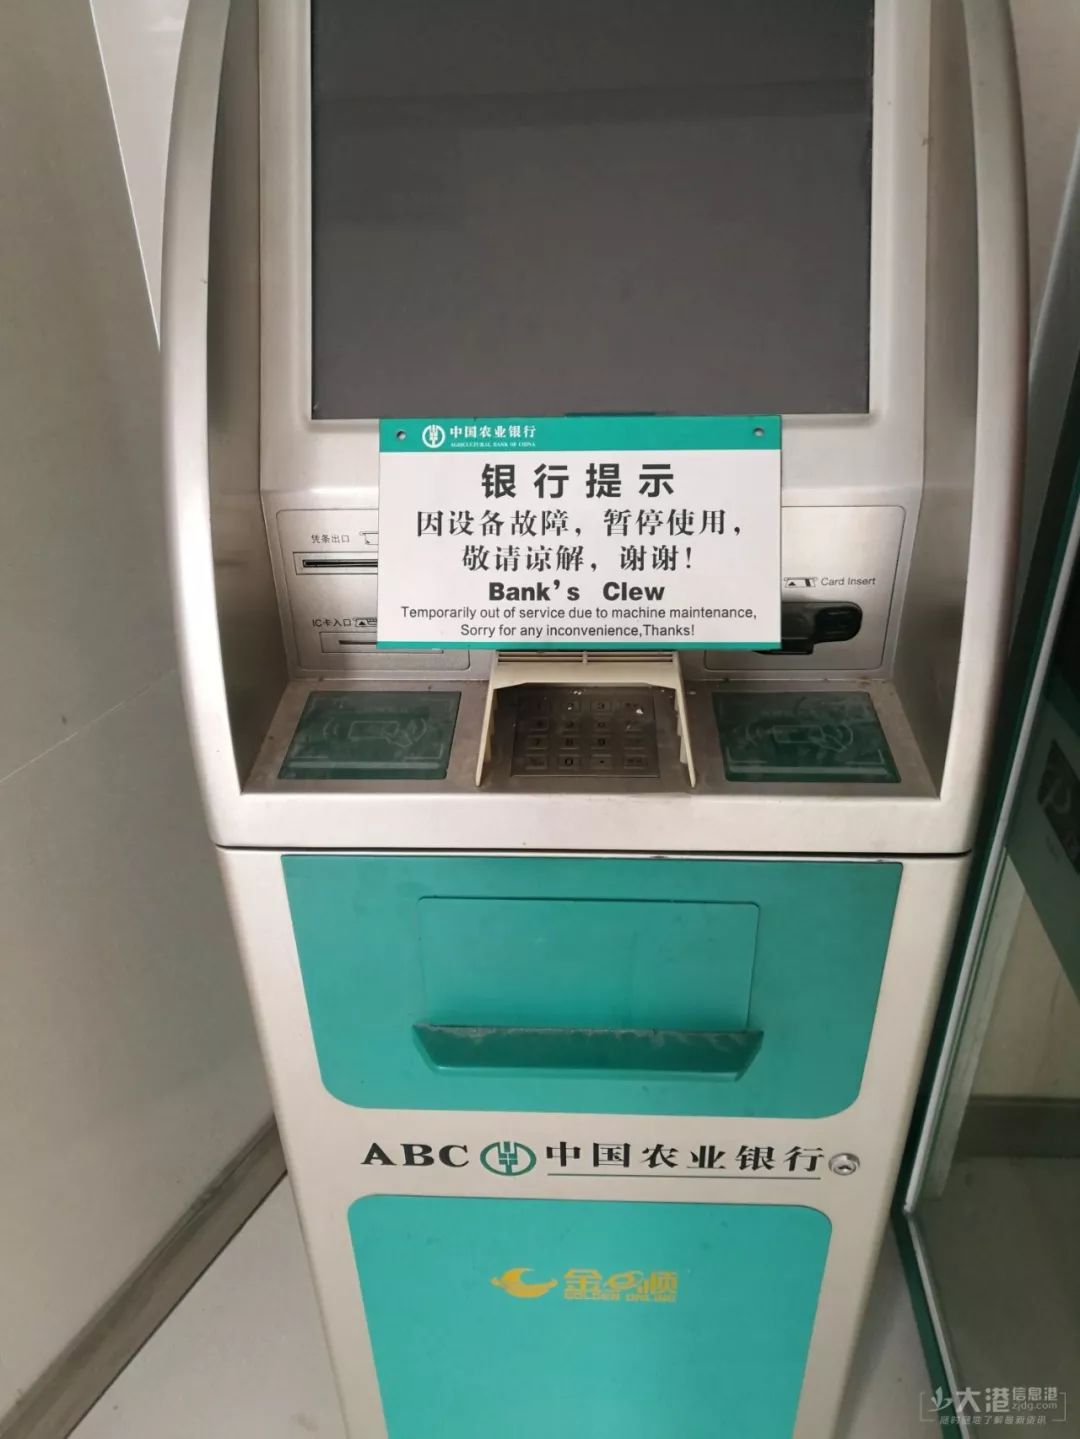 自动取款机是ATM！那存取款一体的叫什么？ 自动取款机atm银行